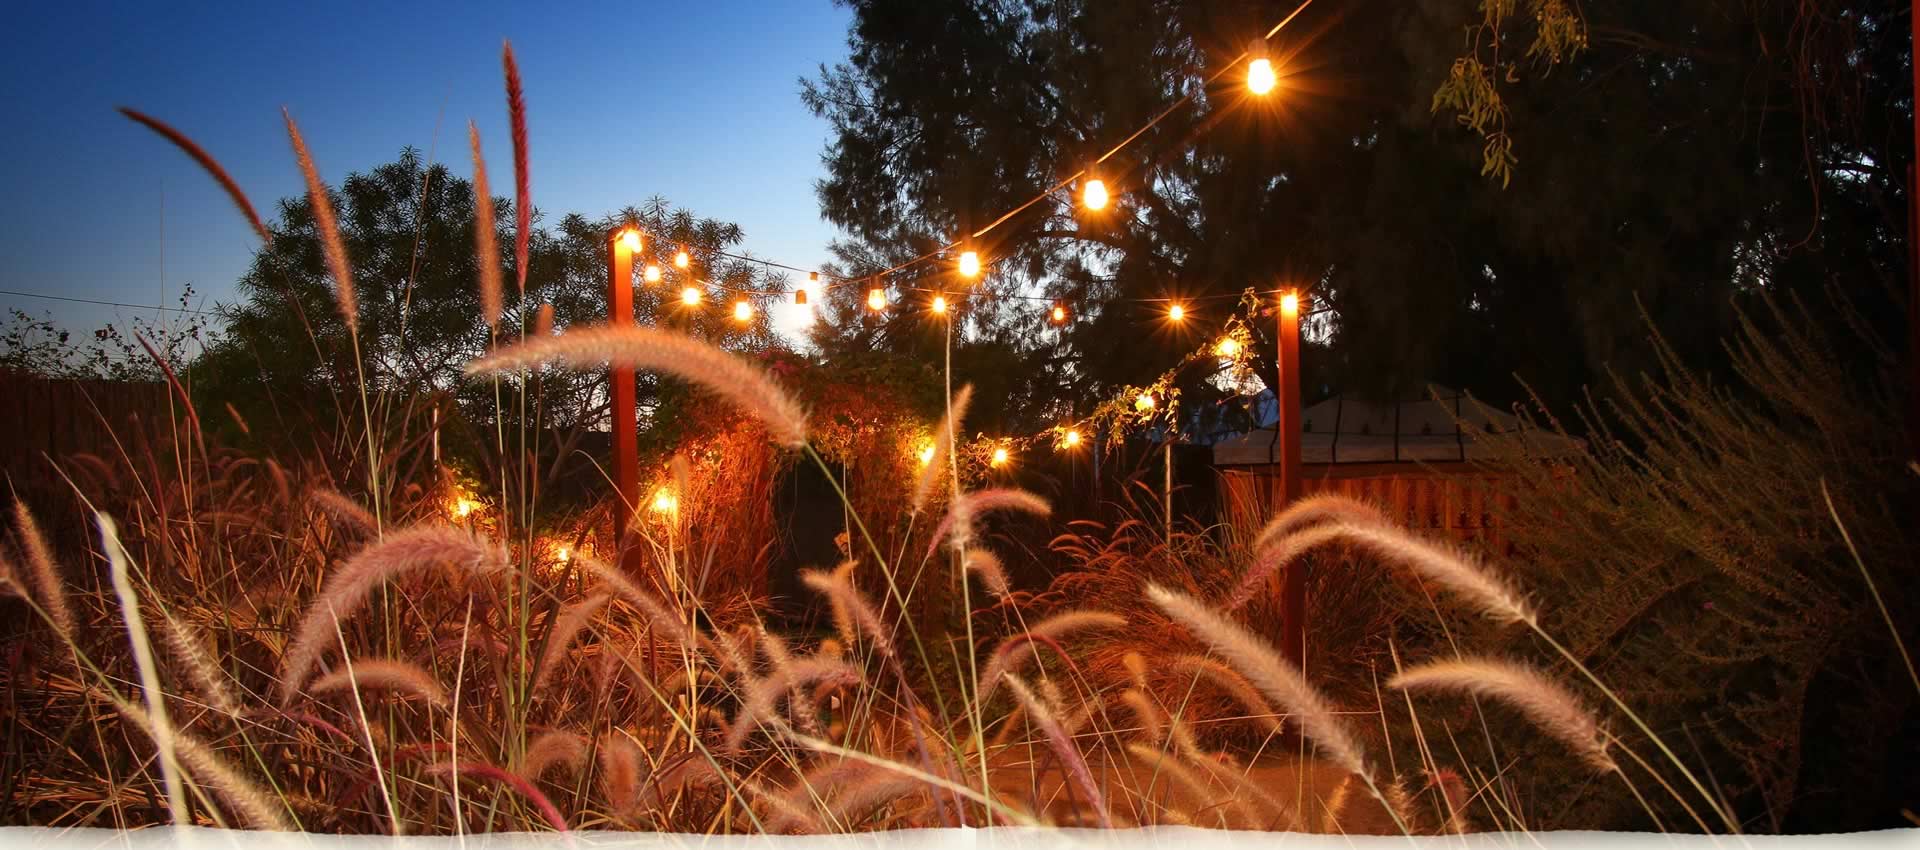 El Morocco Inn Garden at night with lights